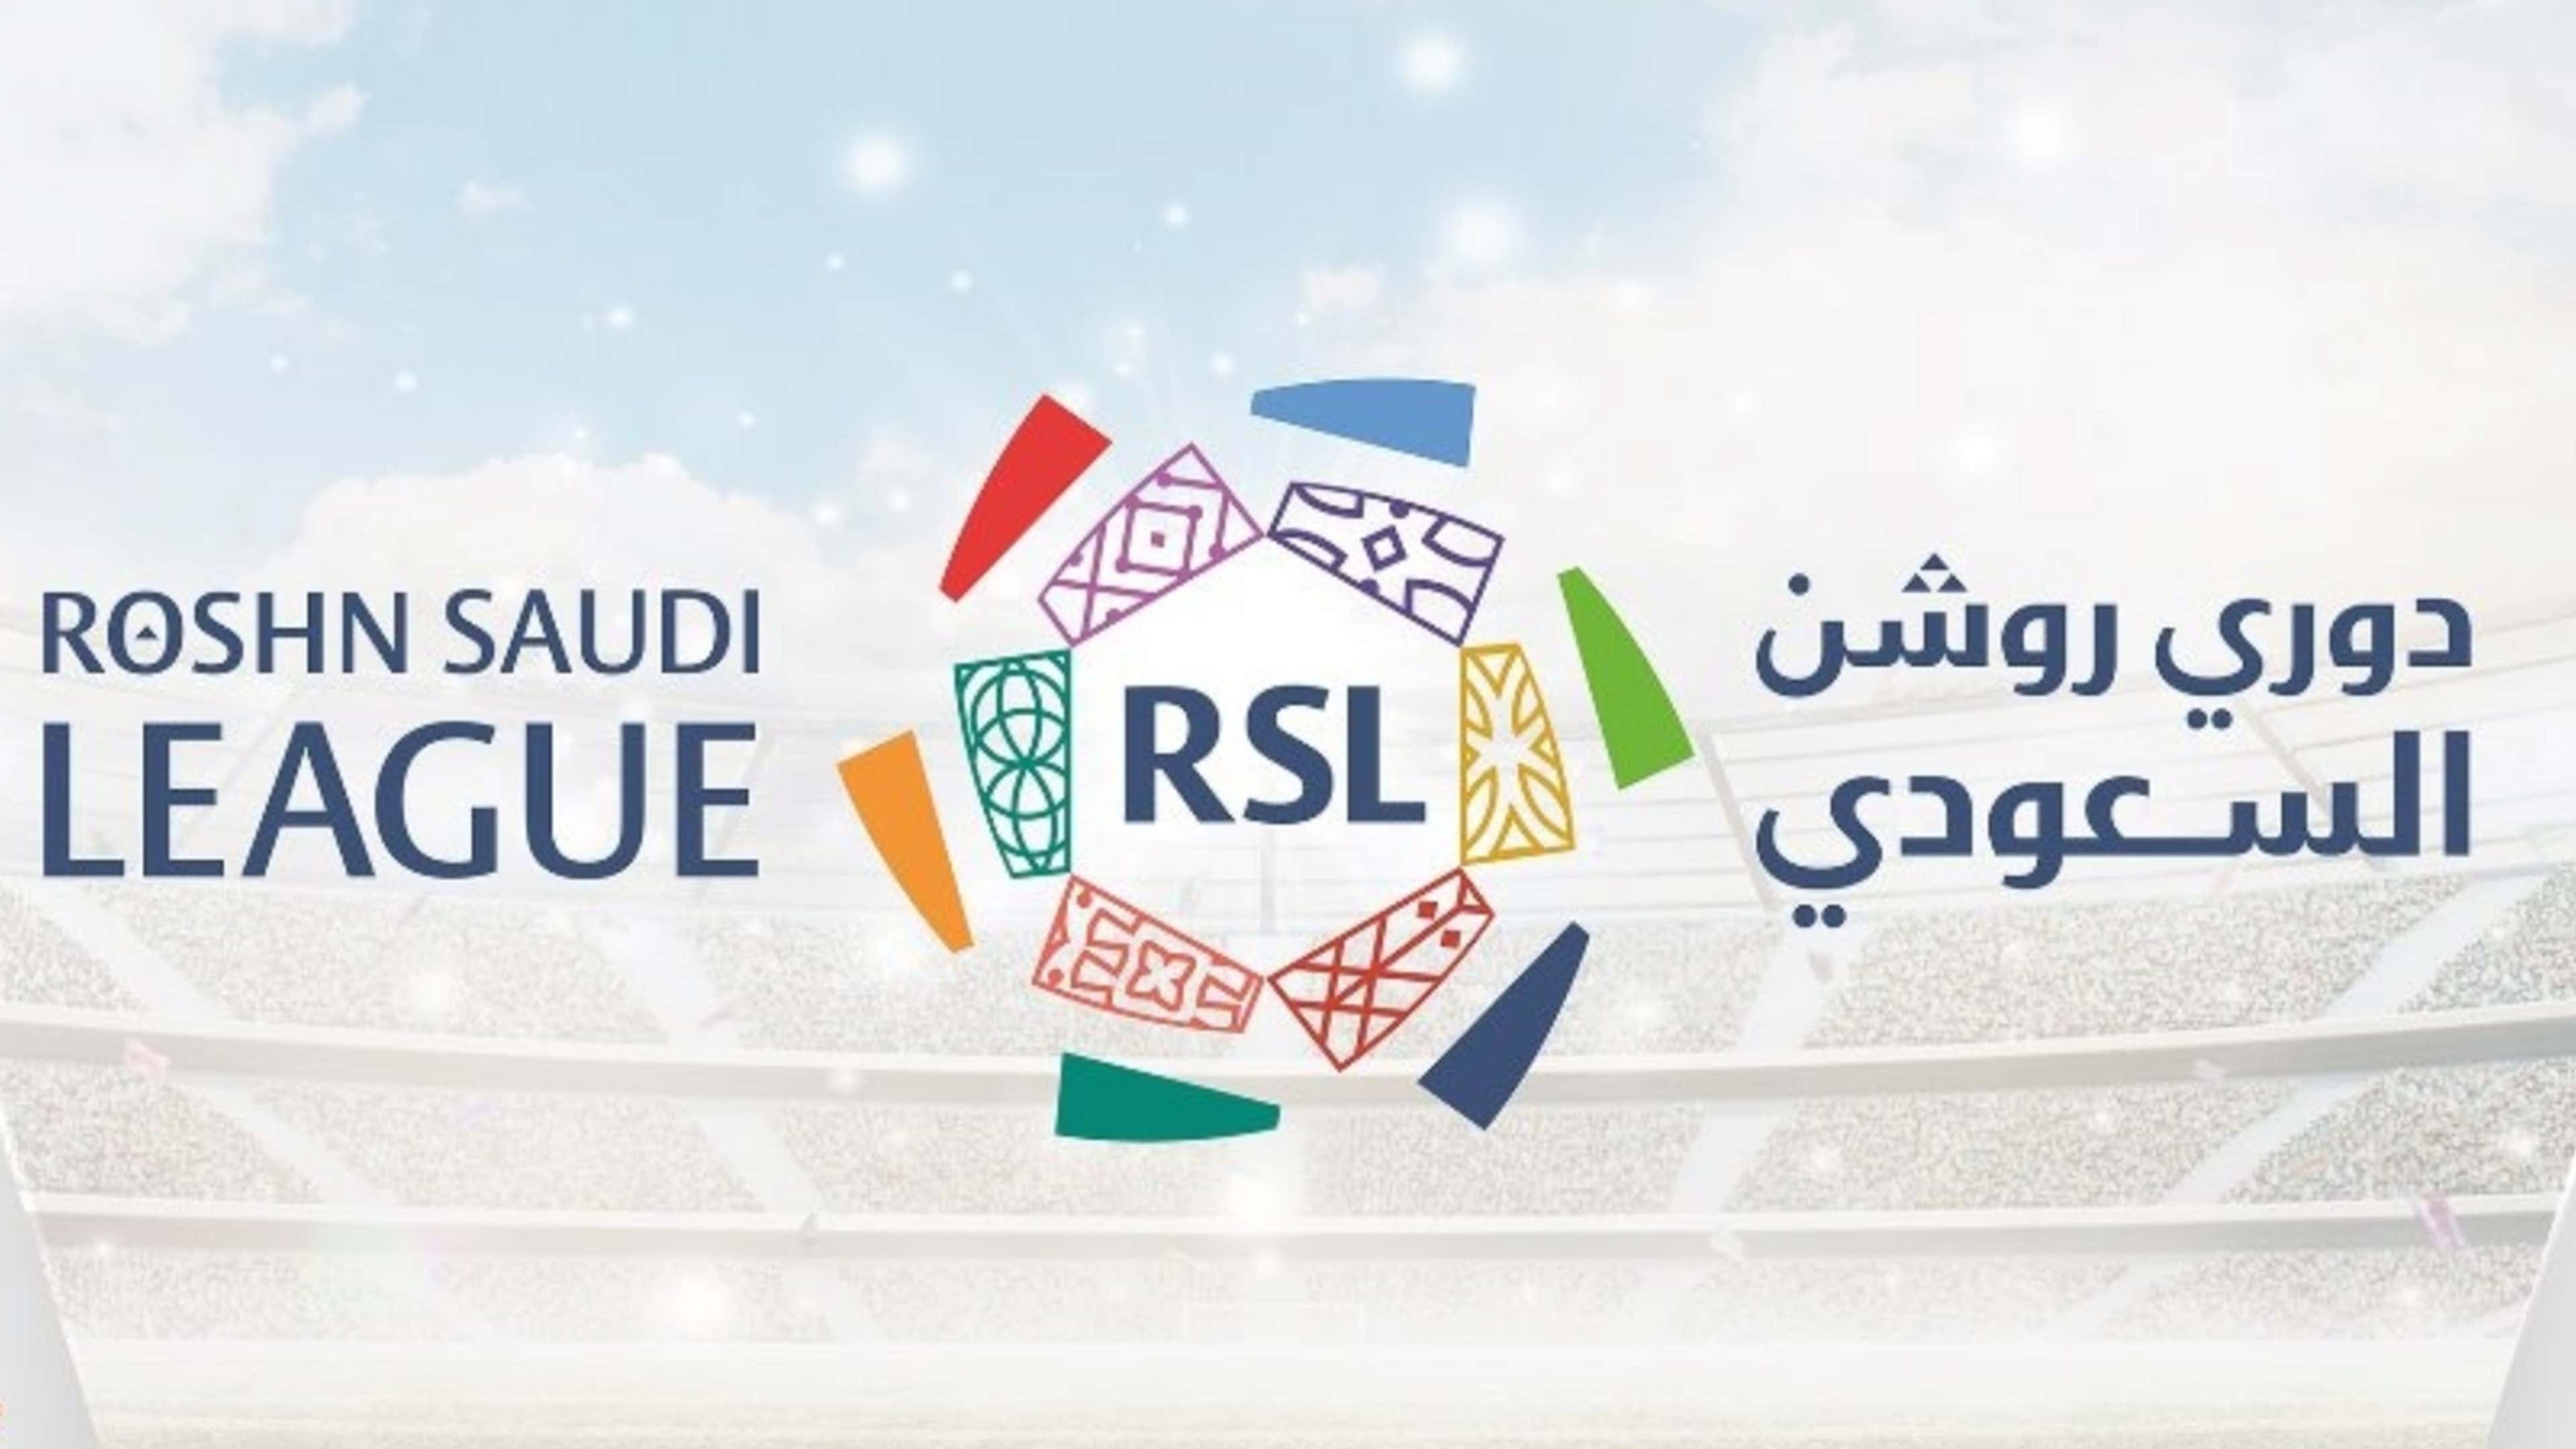 Saudi pro league. Саудовская про лига. Саудовская про лига логотип. Саудовская Аравия премьер лига. Лига Саудовской Аравии эмблема.